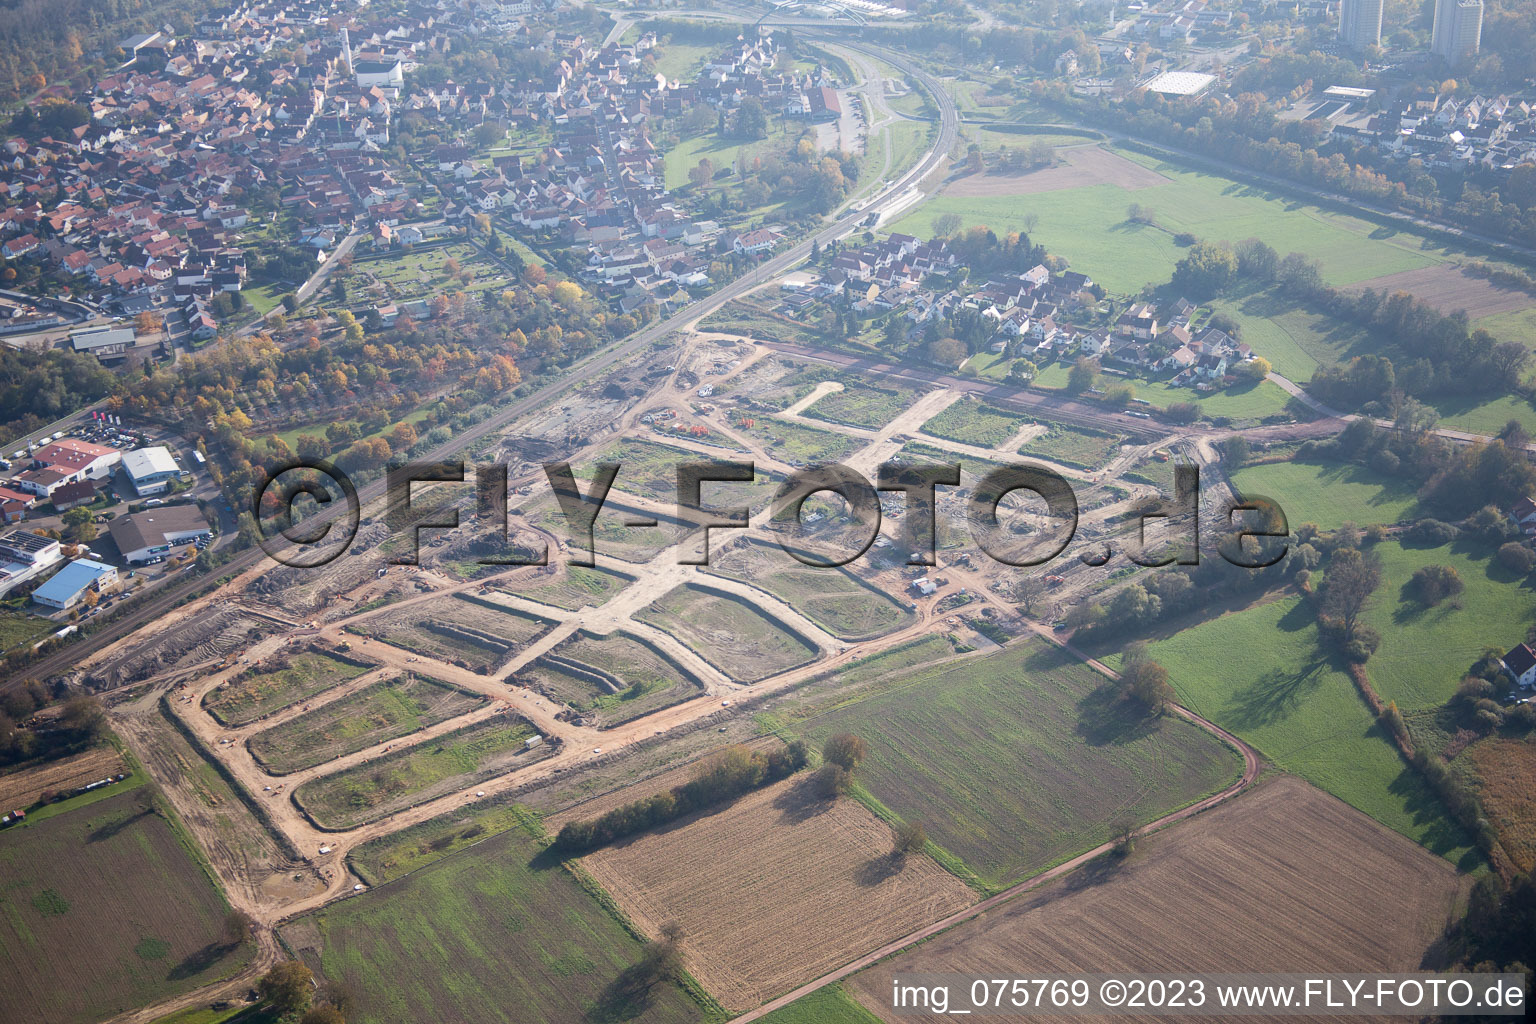 Oblique view of Niederwiesen new development area in Wörth am Rhein in the state Rhineland-Palatinate, Germany